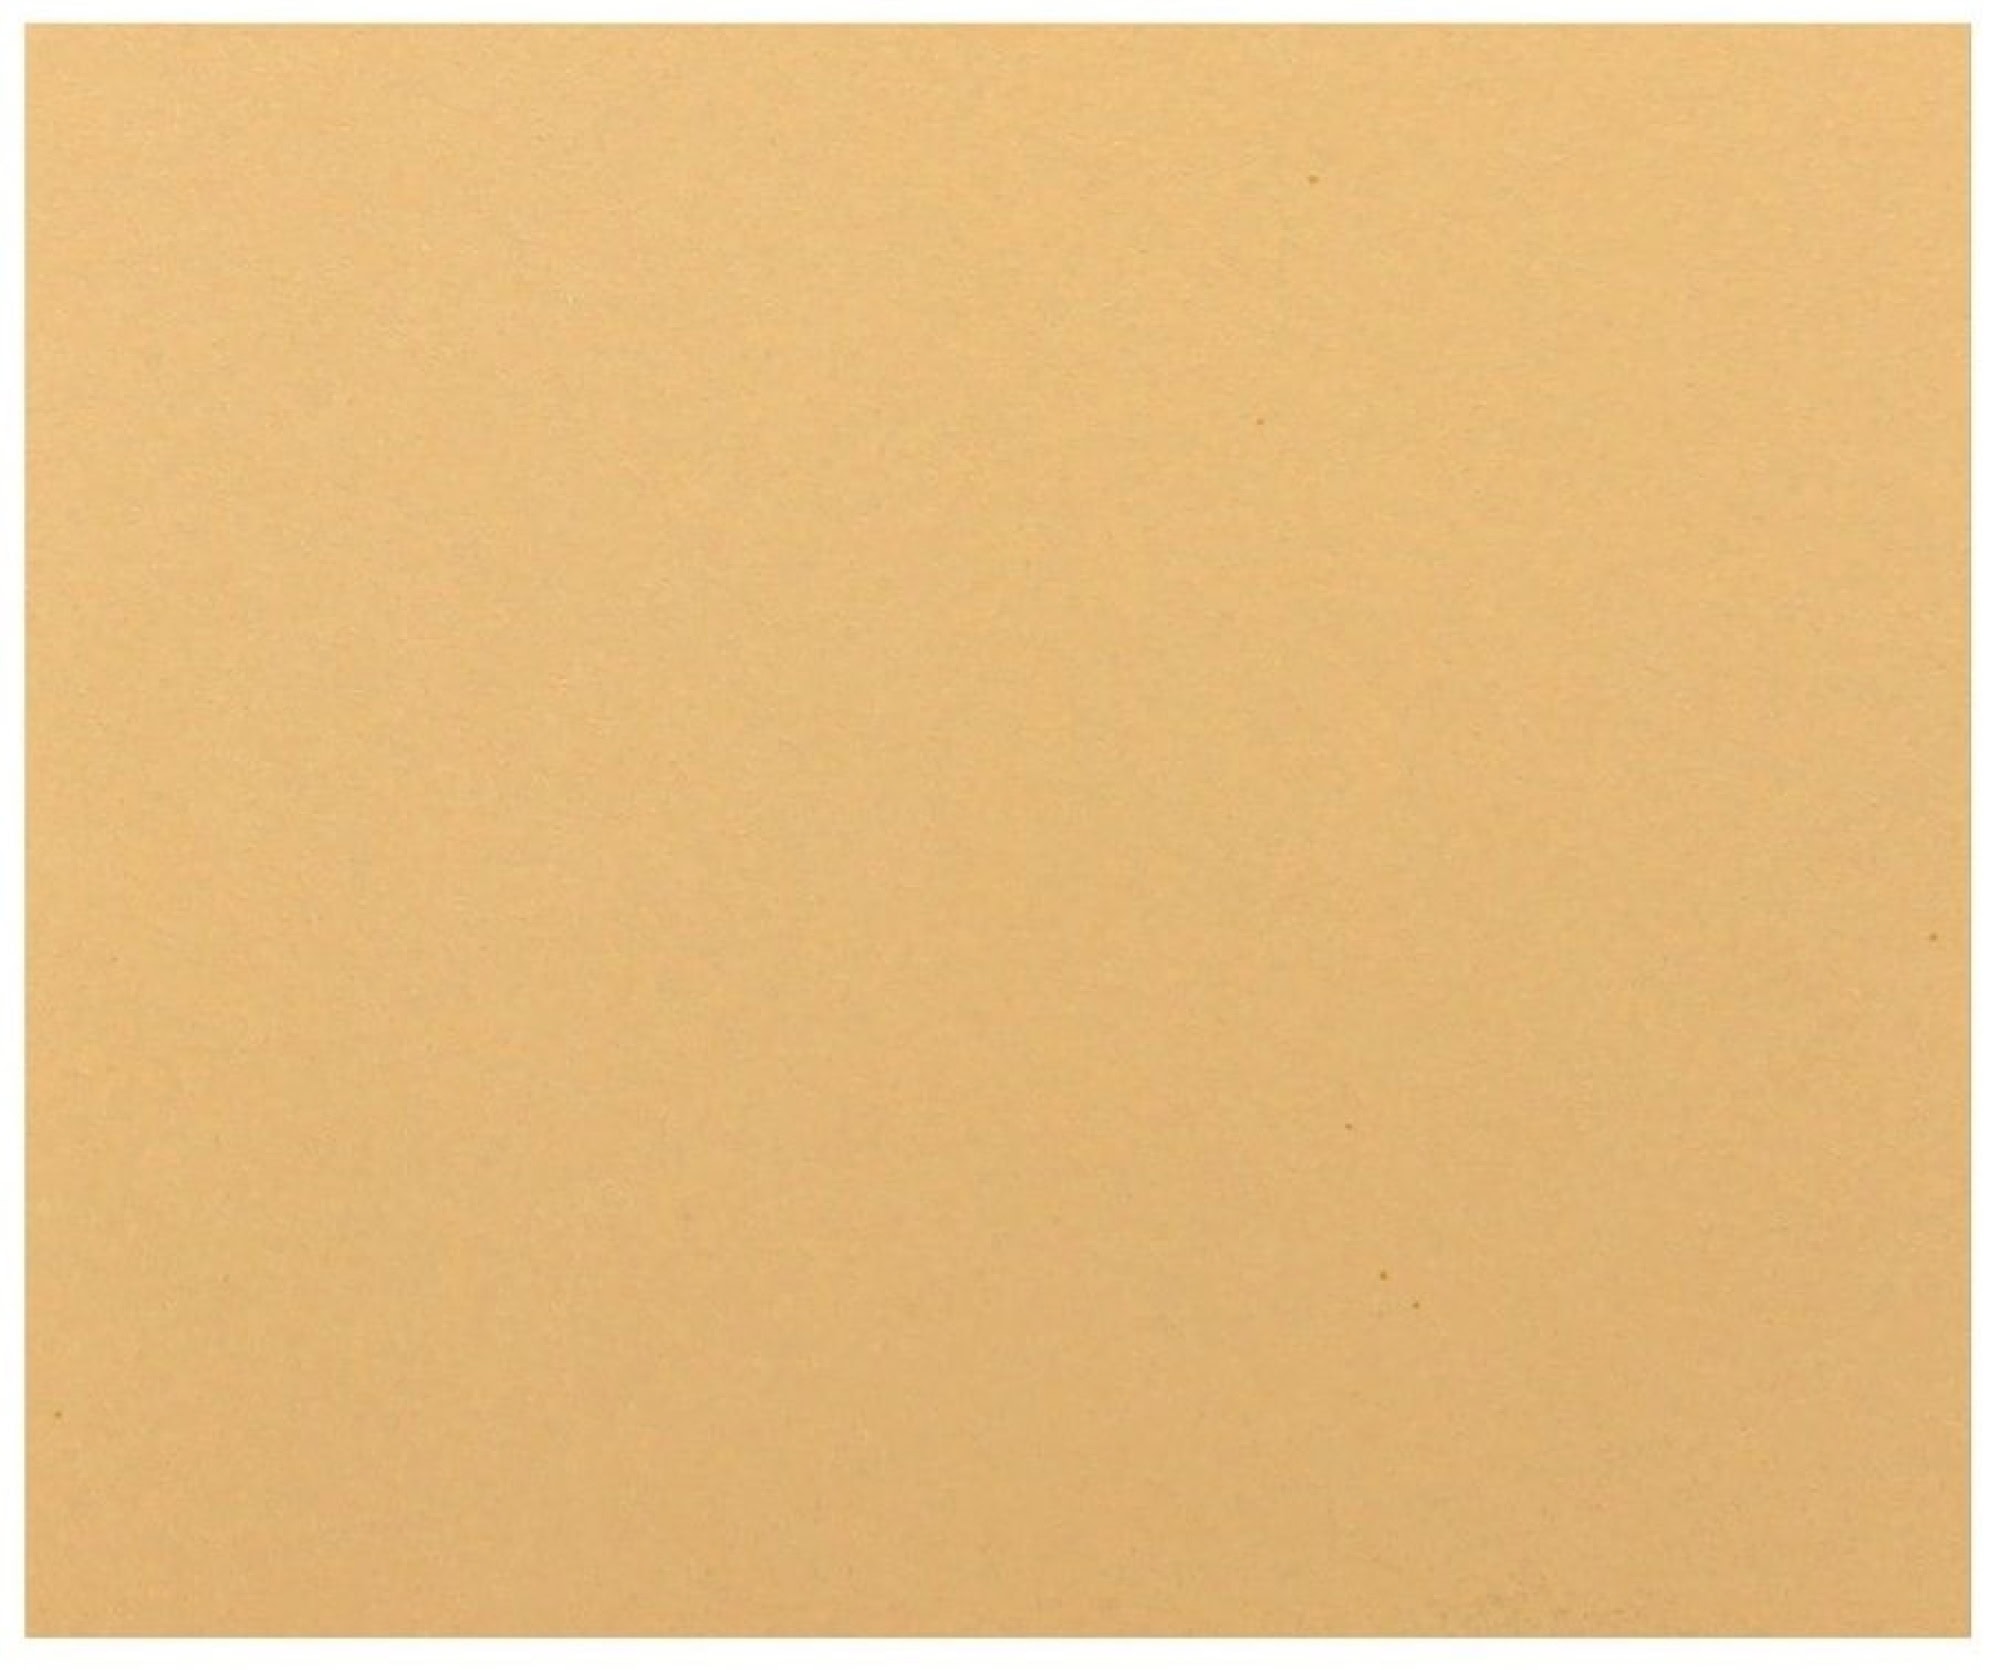 Mirka® Goldflex Soft 2971401012, 115 mm x 140 mm, P120, A, Weich, Ohne Haftung, Einseitige Handpads mit Aluminiumkorn, Für Finish- und Polierarbeiten an Werkstücken